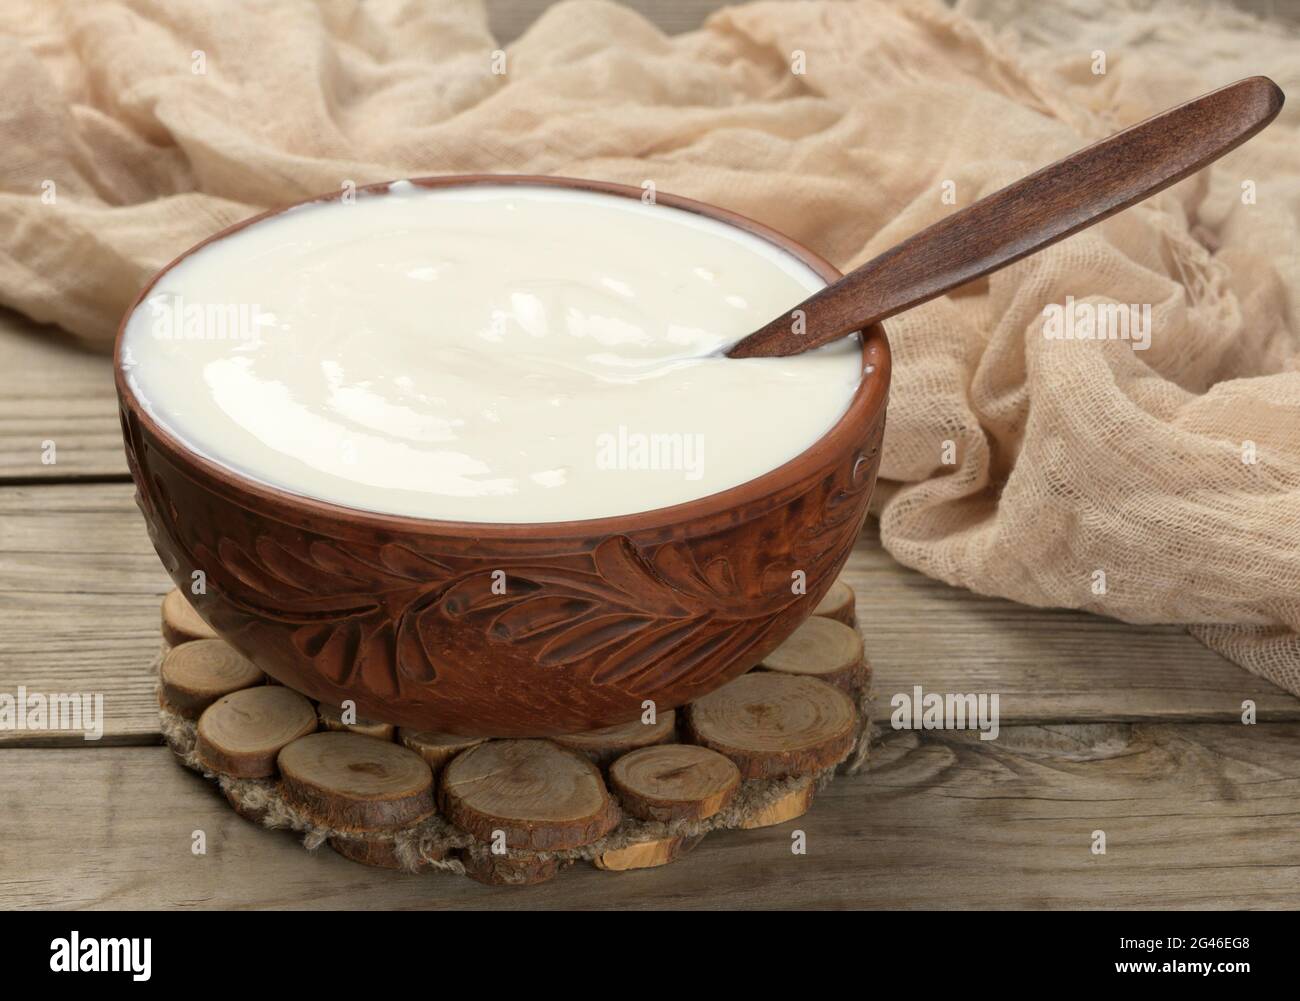 Saure Creme in einer braunen Keramikschale mit einem Holzlöffel auf einem hölzernen Hintergrund, fermentierte Milch nützliches Produkt Stockfoto